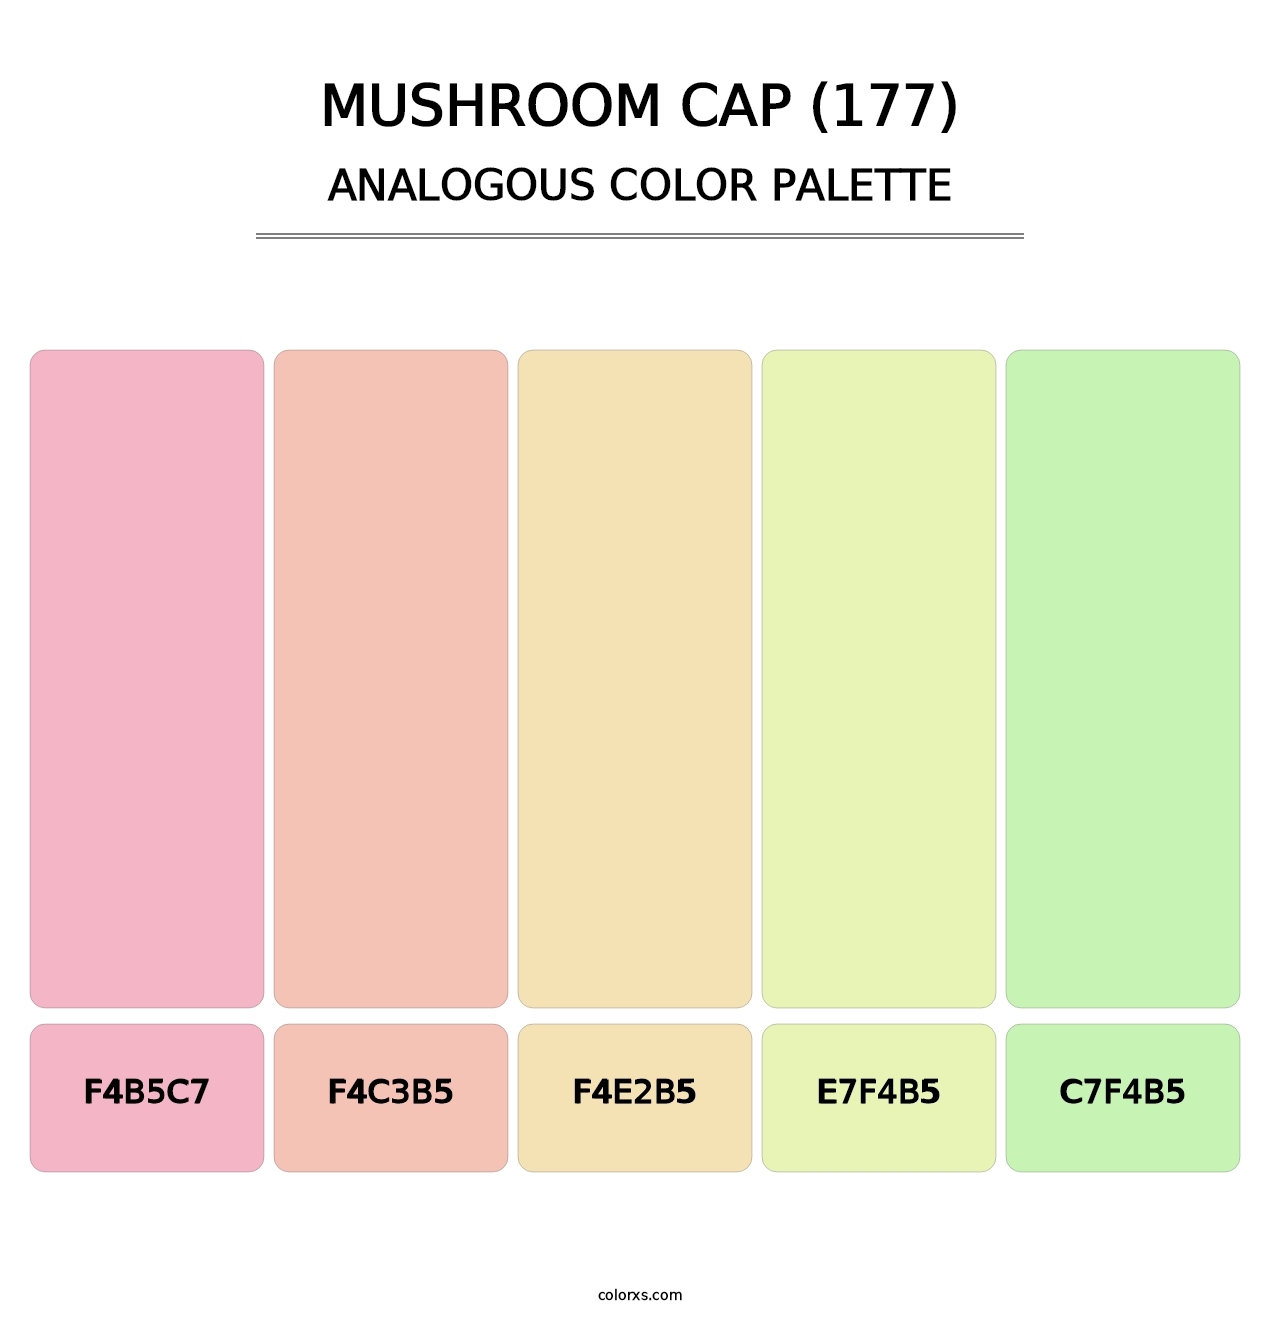 Mushroom Cap (177) - Analogous Color Palette